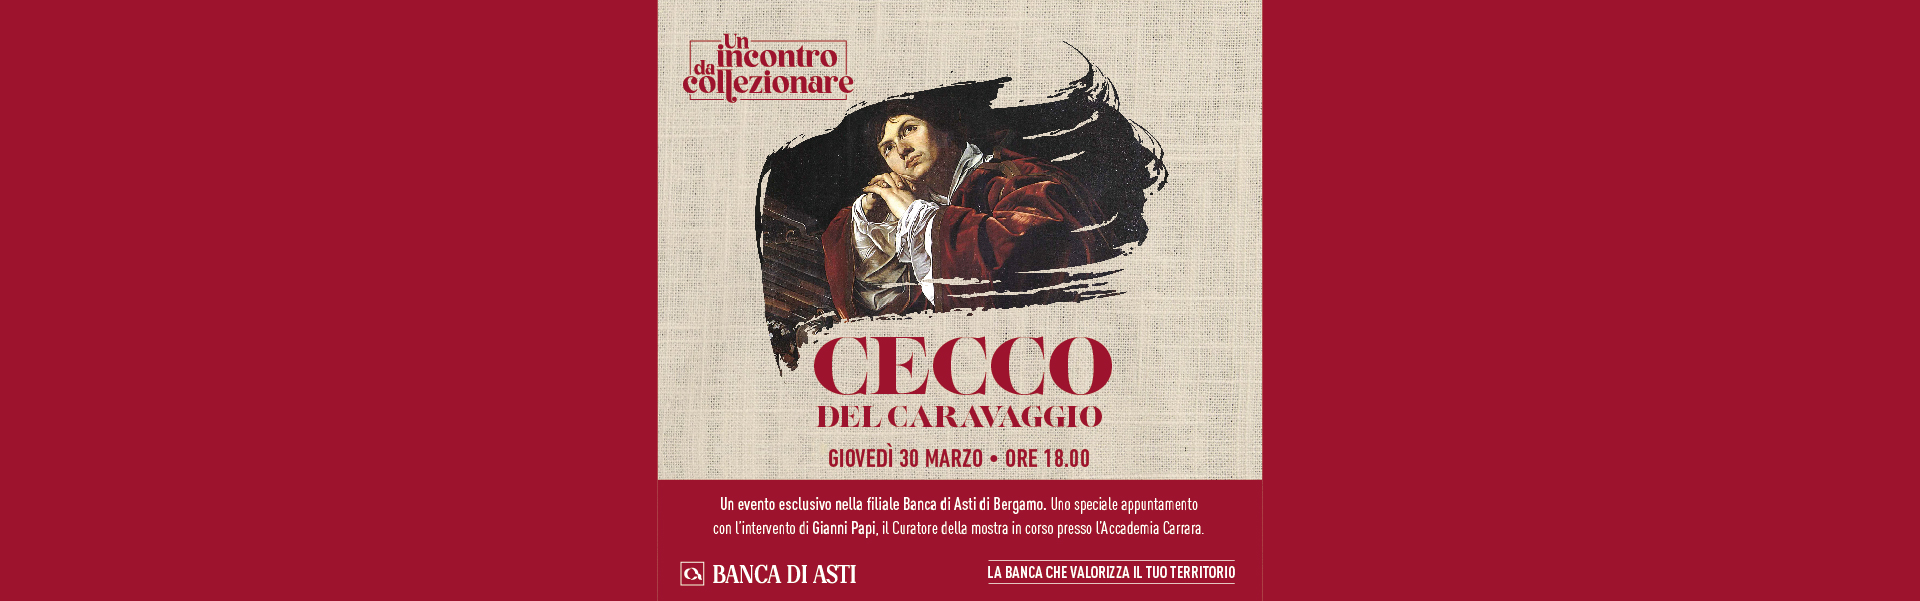 Evento “Un incontro da collezionare – Cecco del Caravaggio” di Banca di Asti